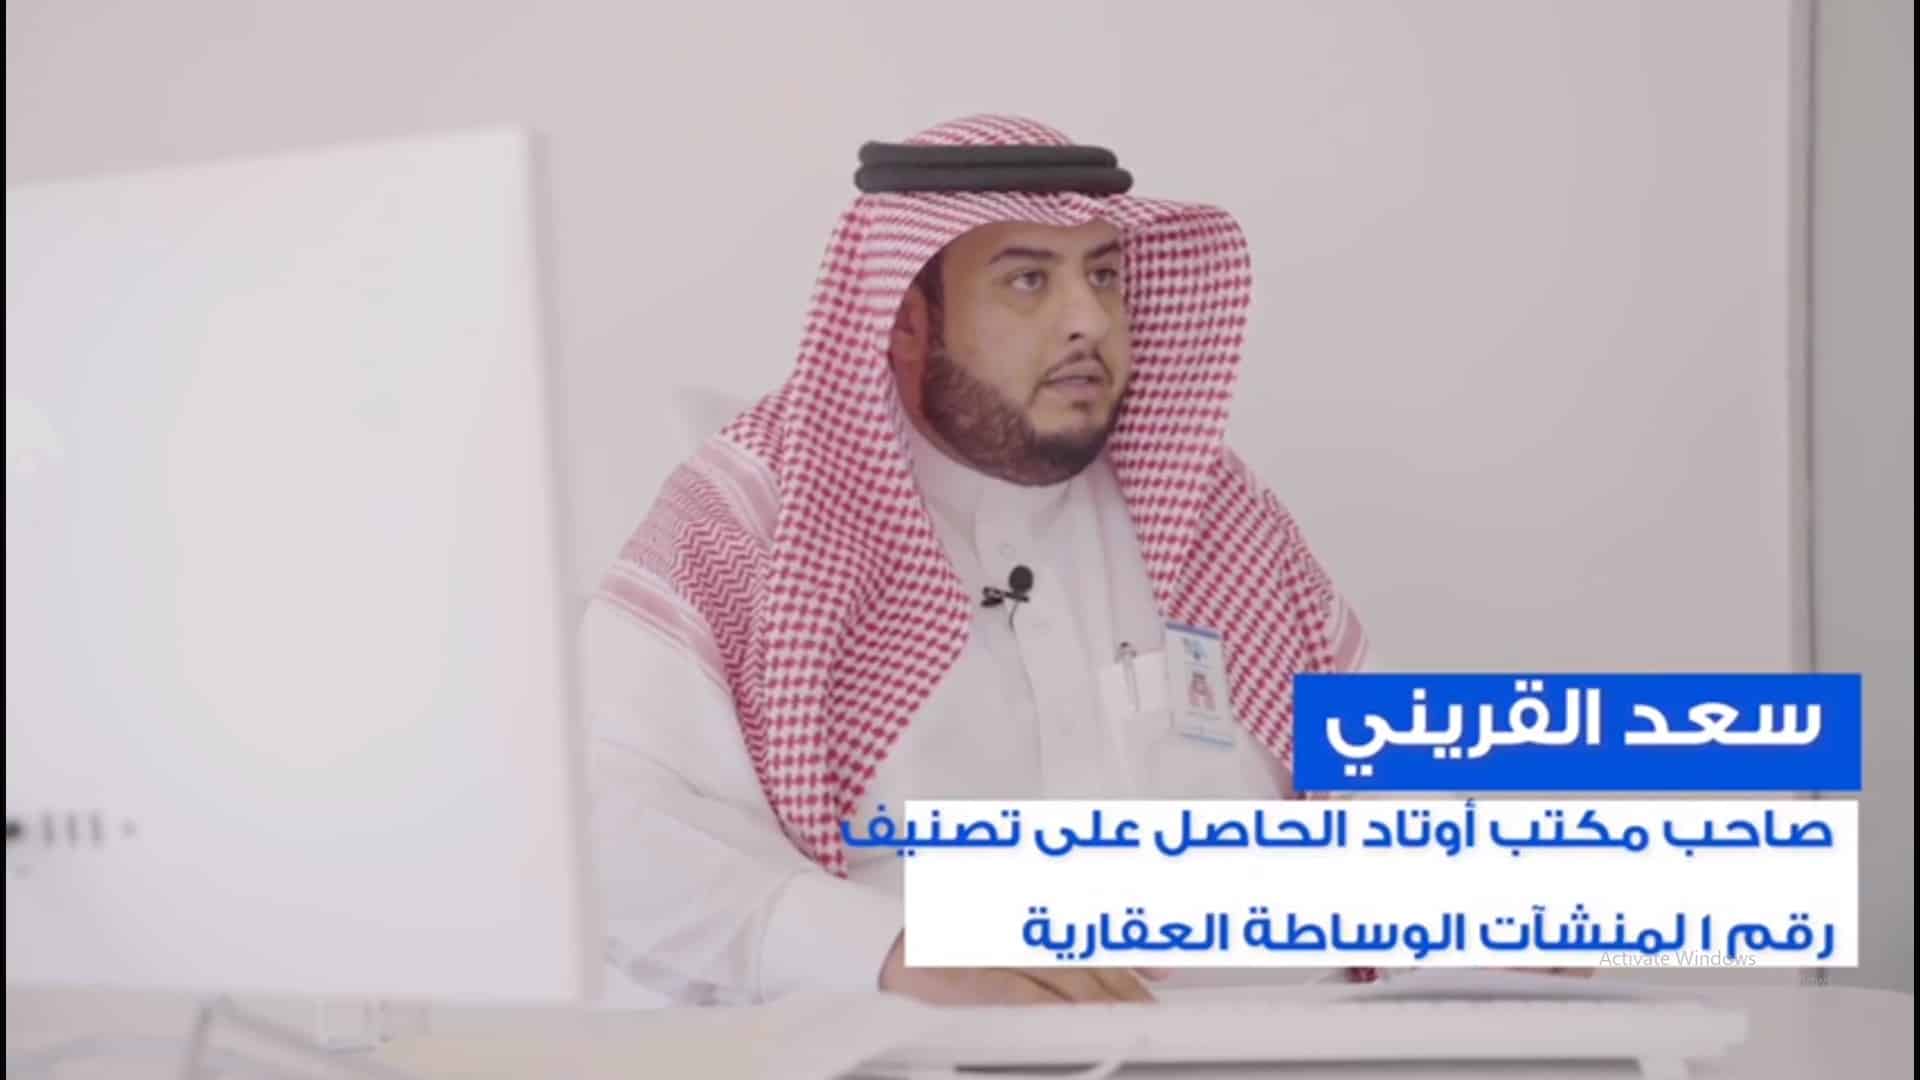 فيديو.. قصة نجاح صاحب أول منشأة وساطة عقارية في المملكة